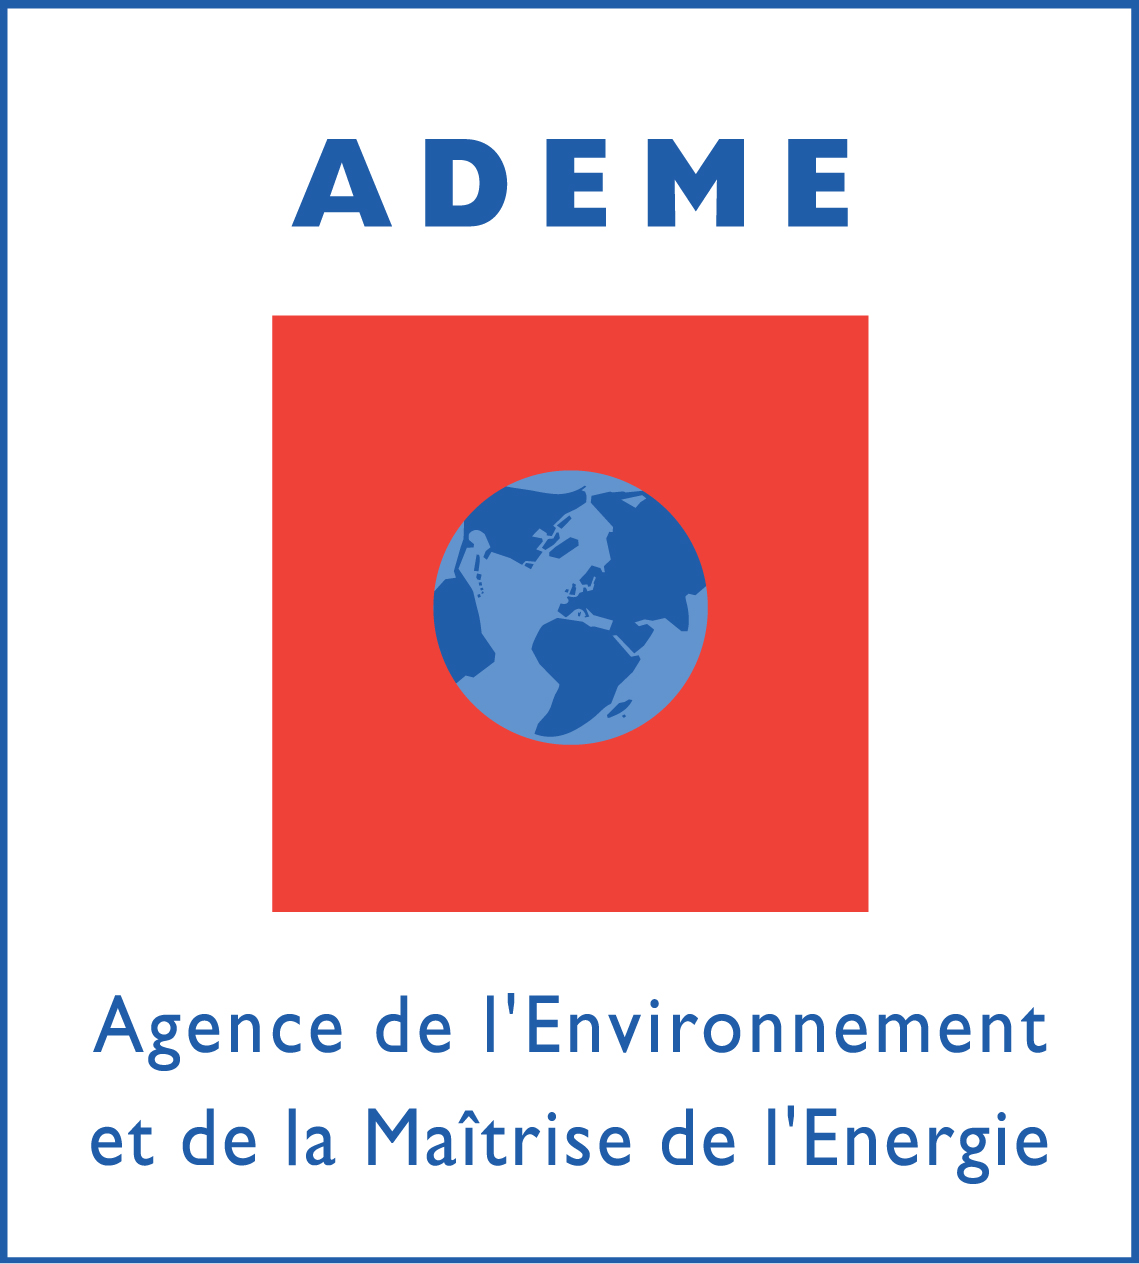 ADEME, Agence de l'environnement et de la maîtriste de l'énergie